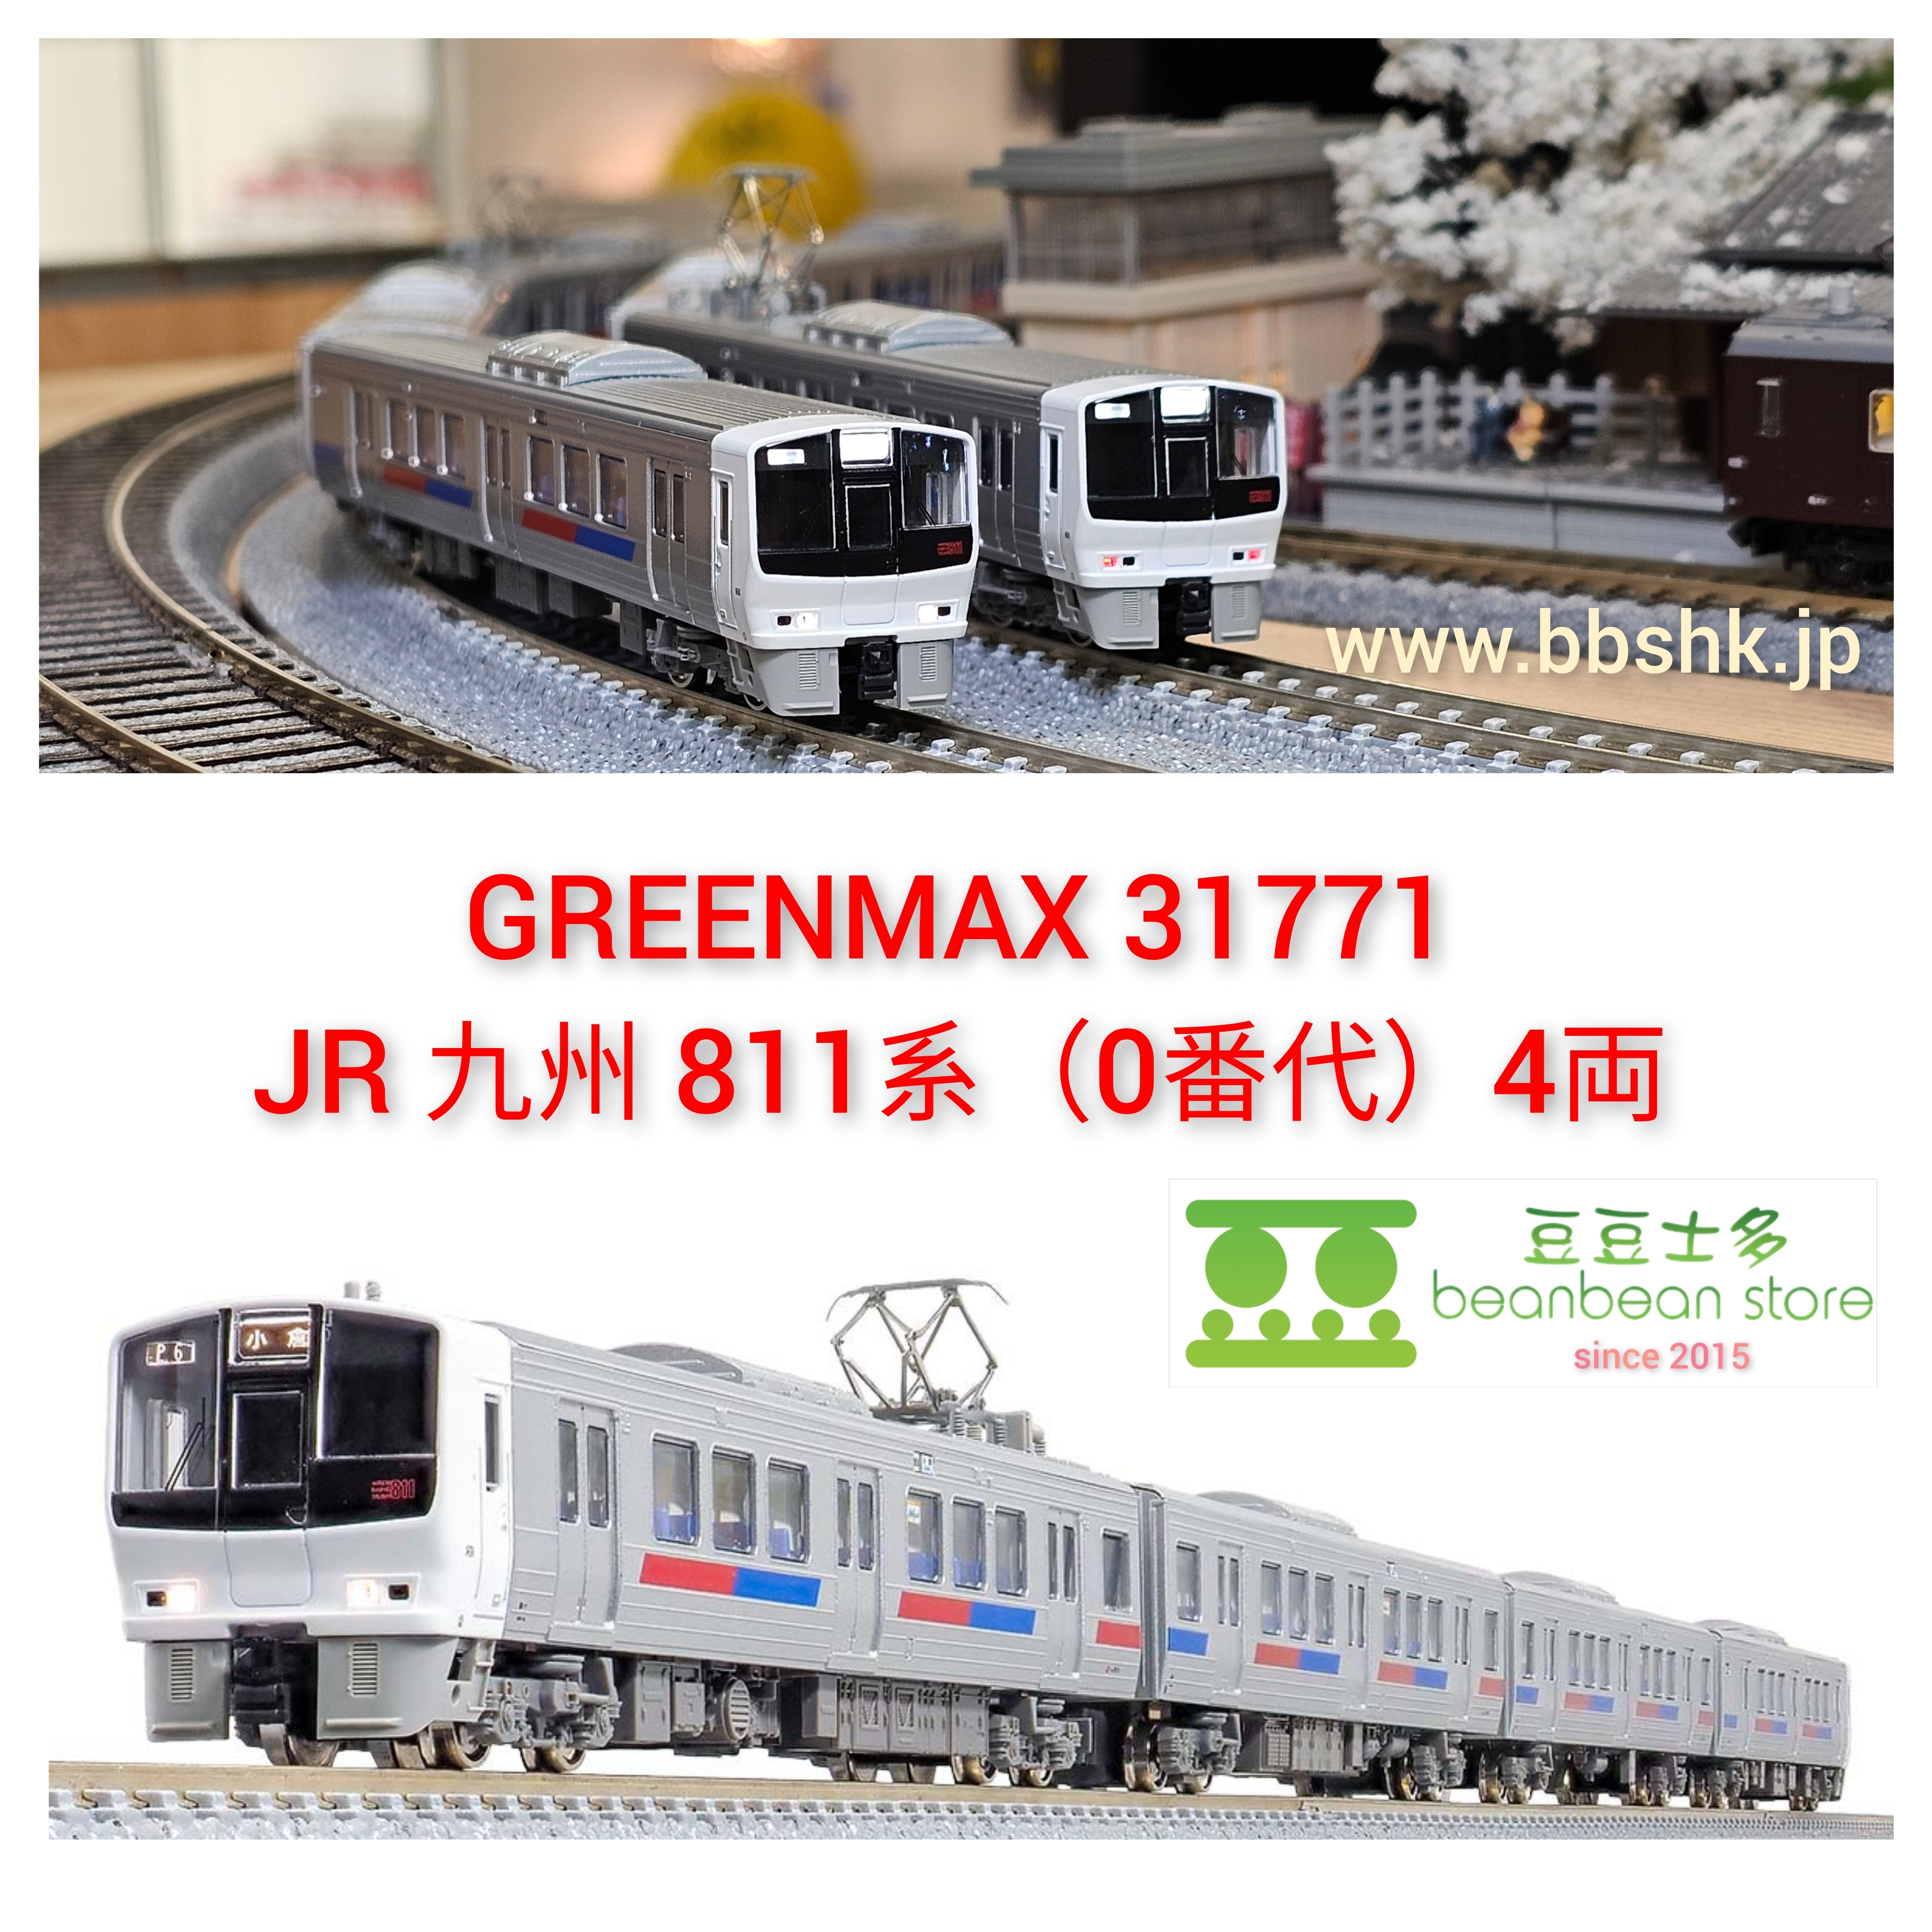 GREENMAX 31771 JR 九州811系(0番代) 4両